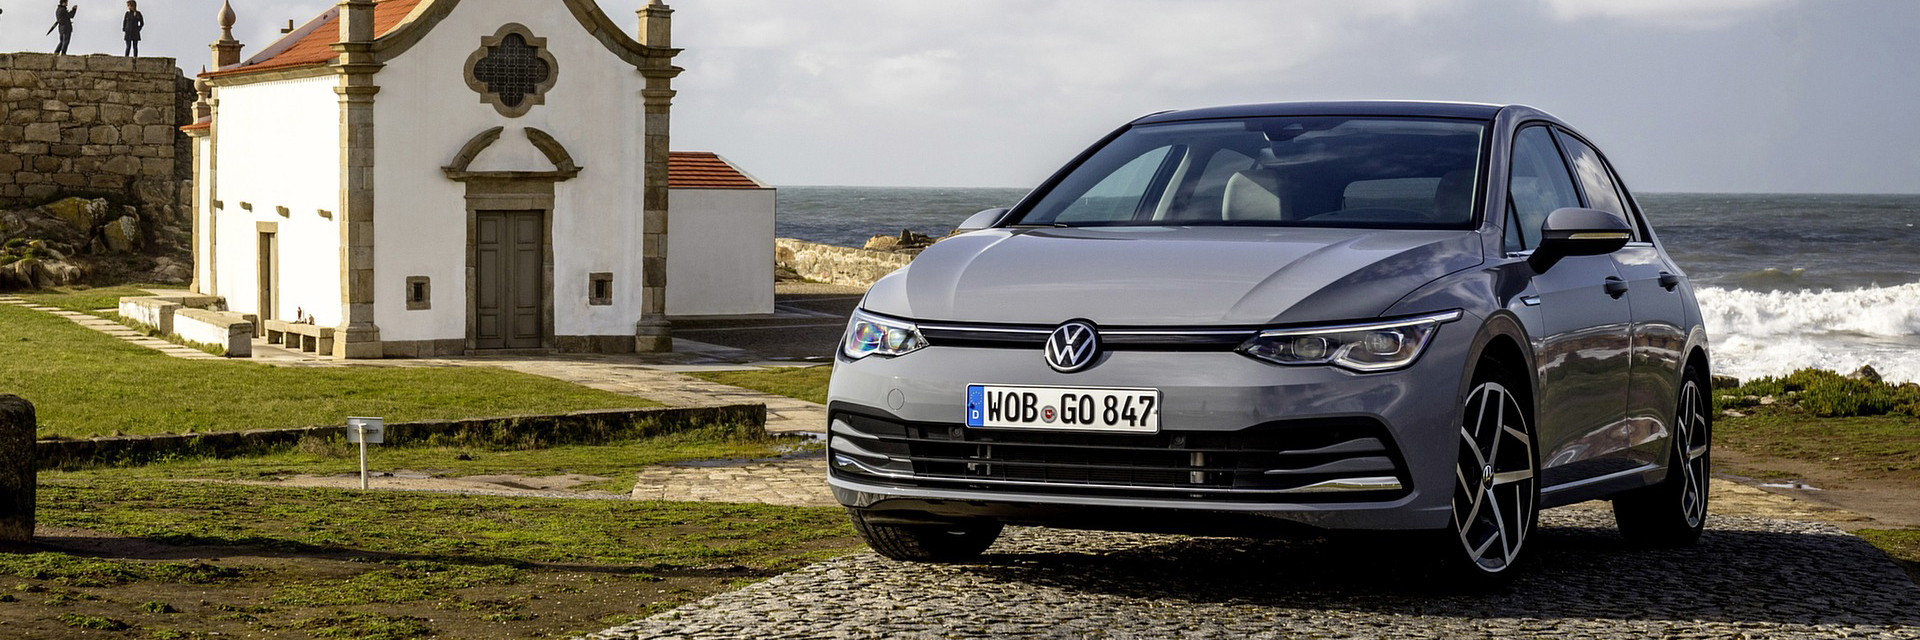 Volkswagen Golf, carros novos, carros km0, carros serviço, carros usados